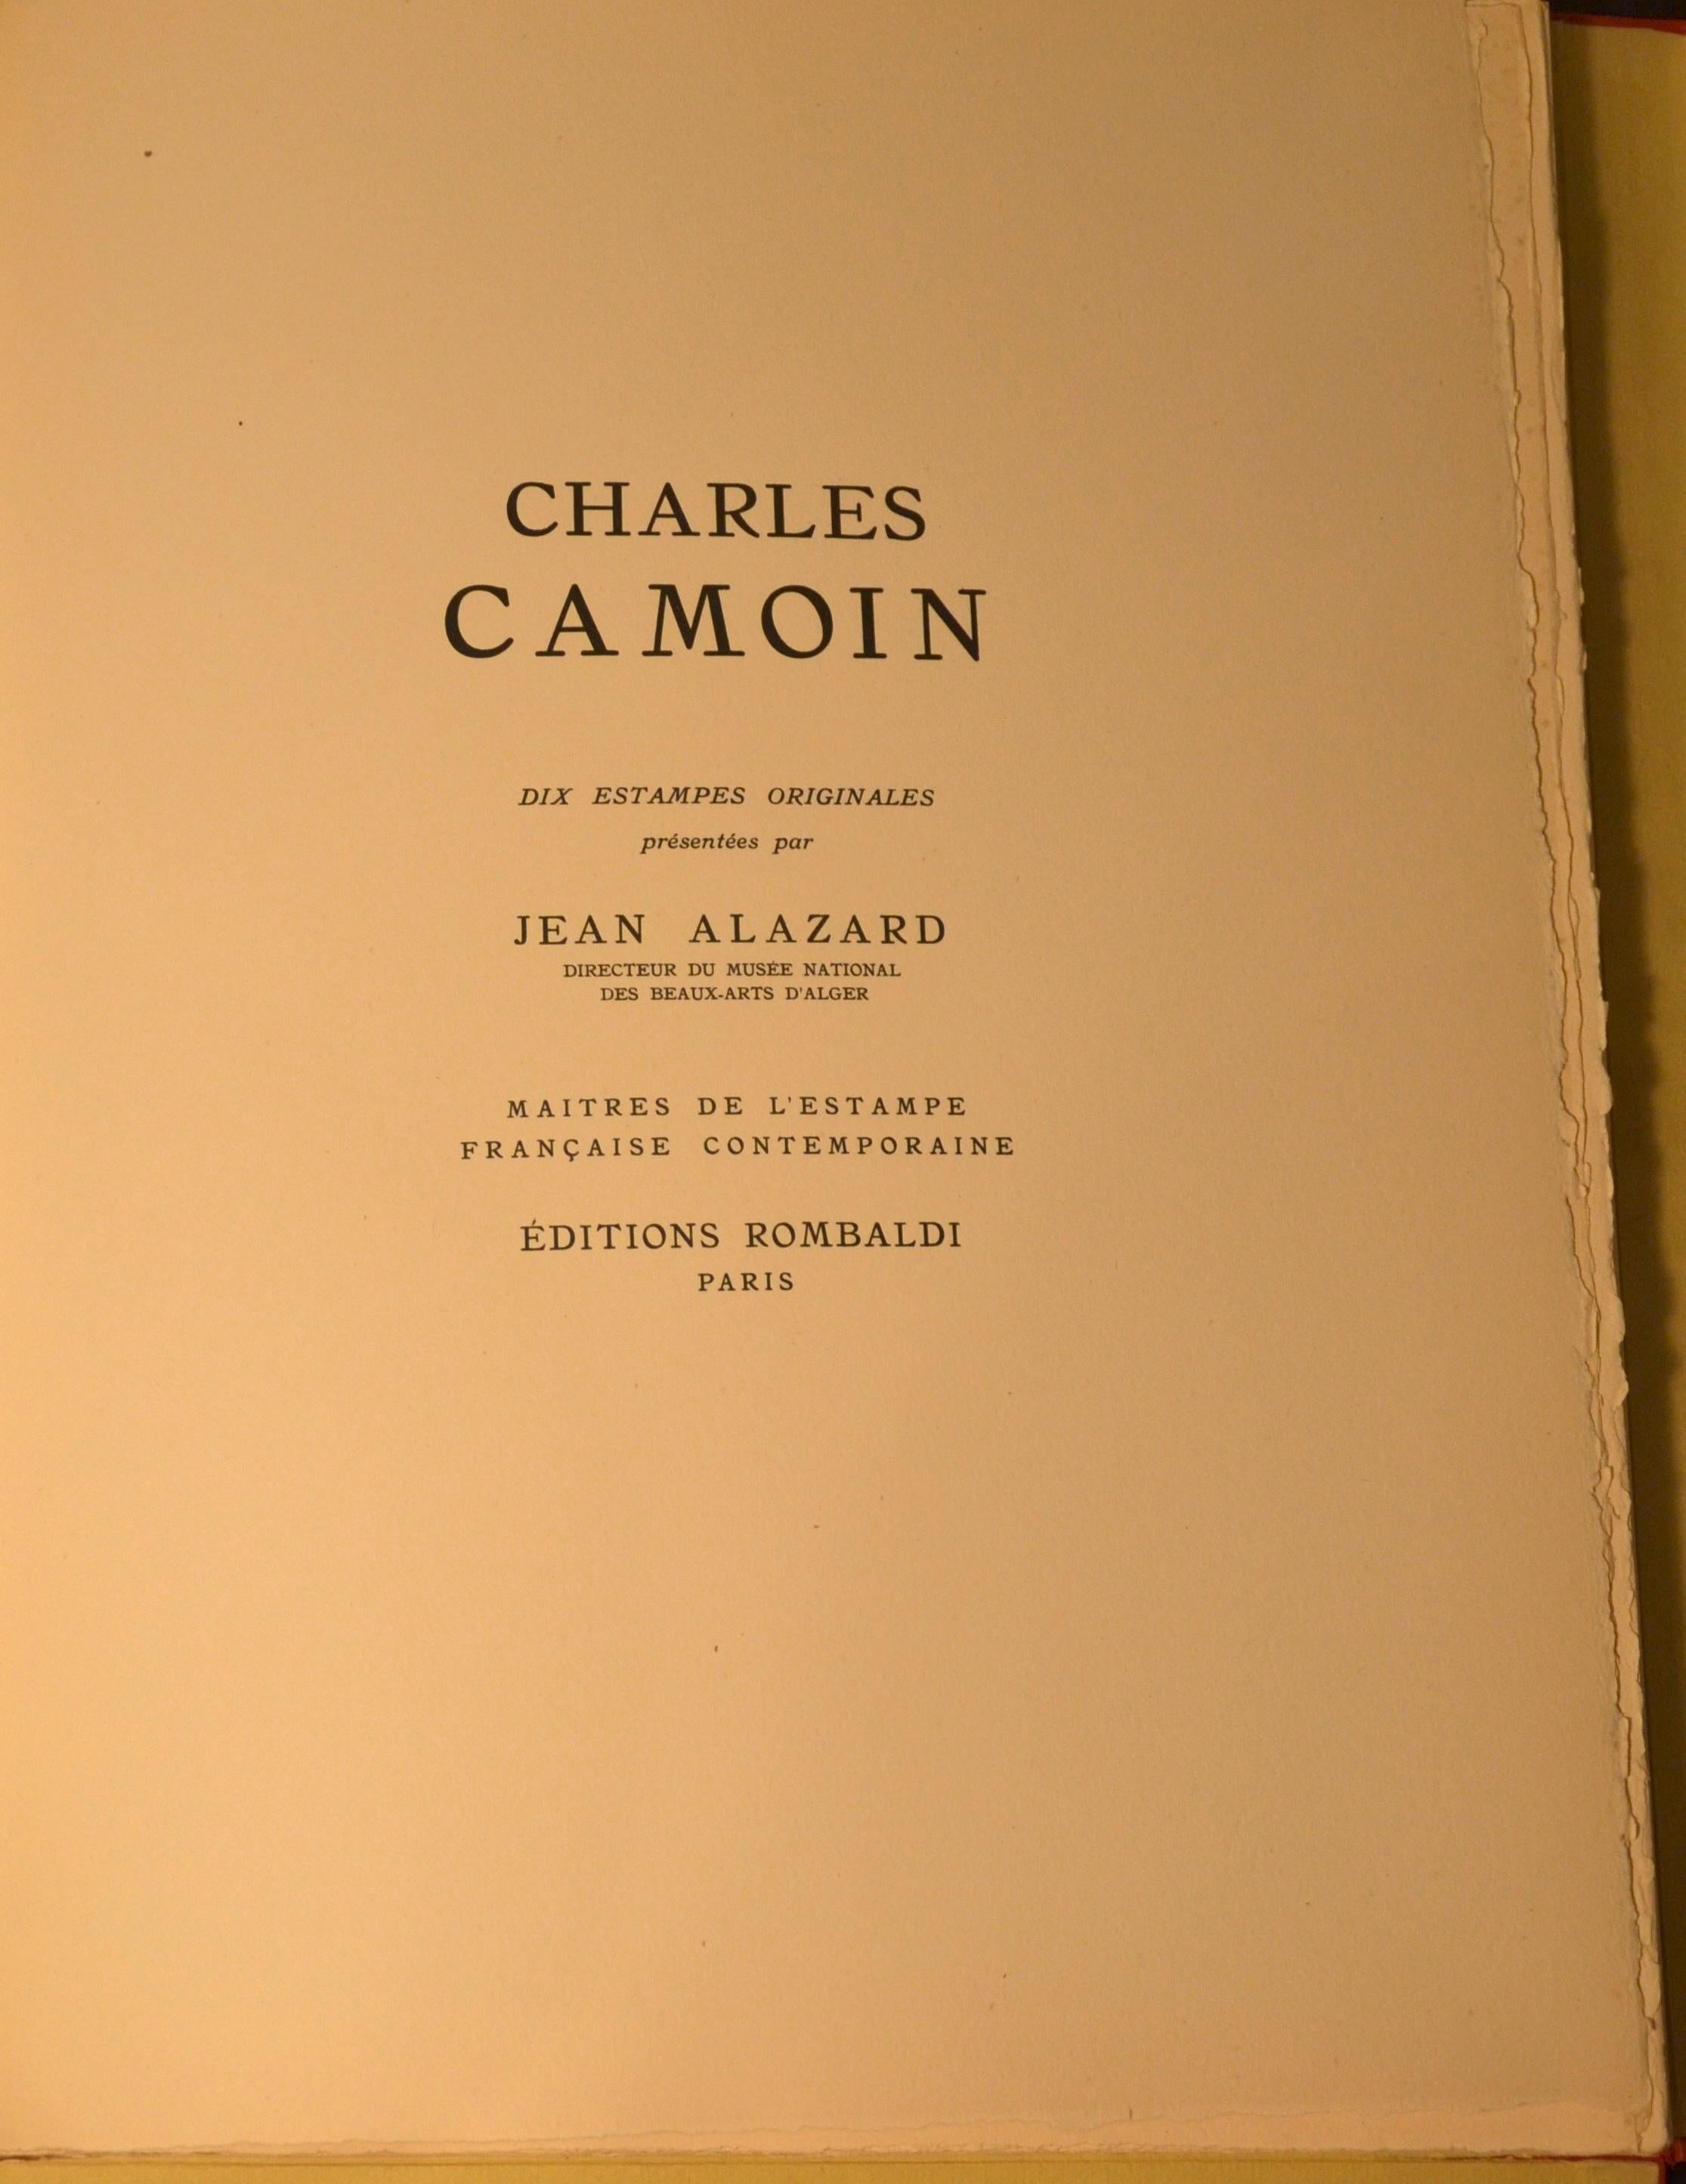 Dix Estampes Originales Présentées par Jean Alazard - by Charles Camoin - 1946 3